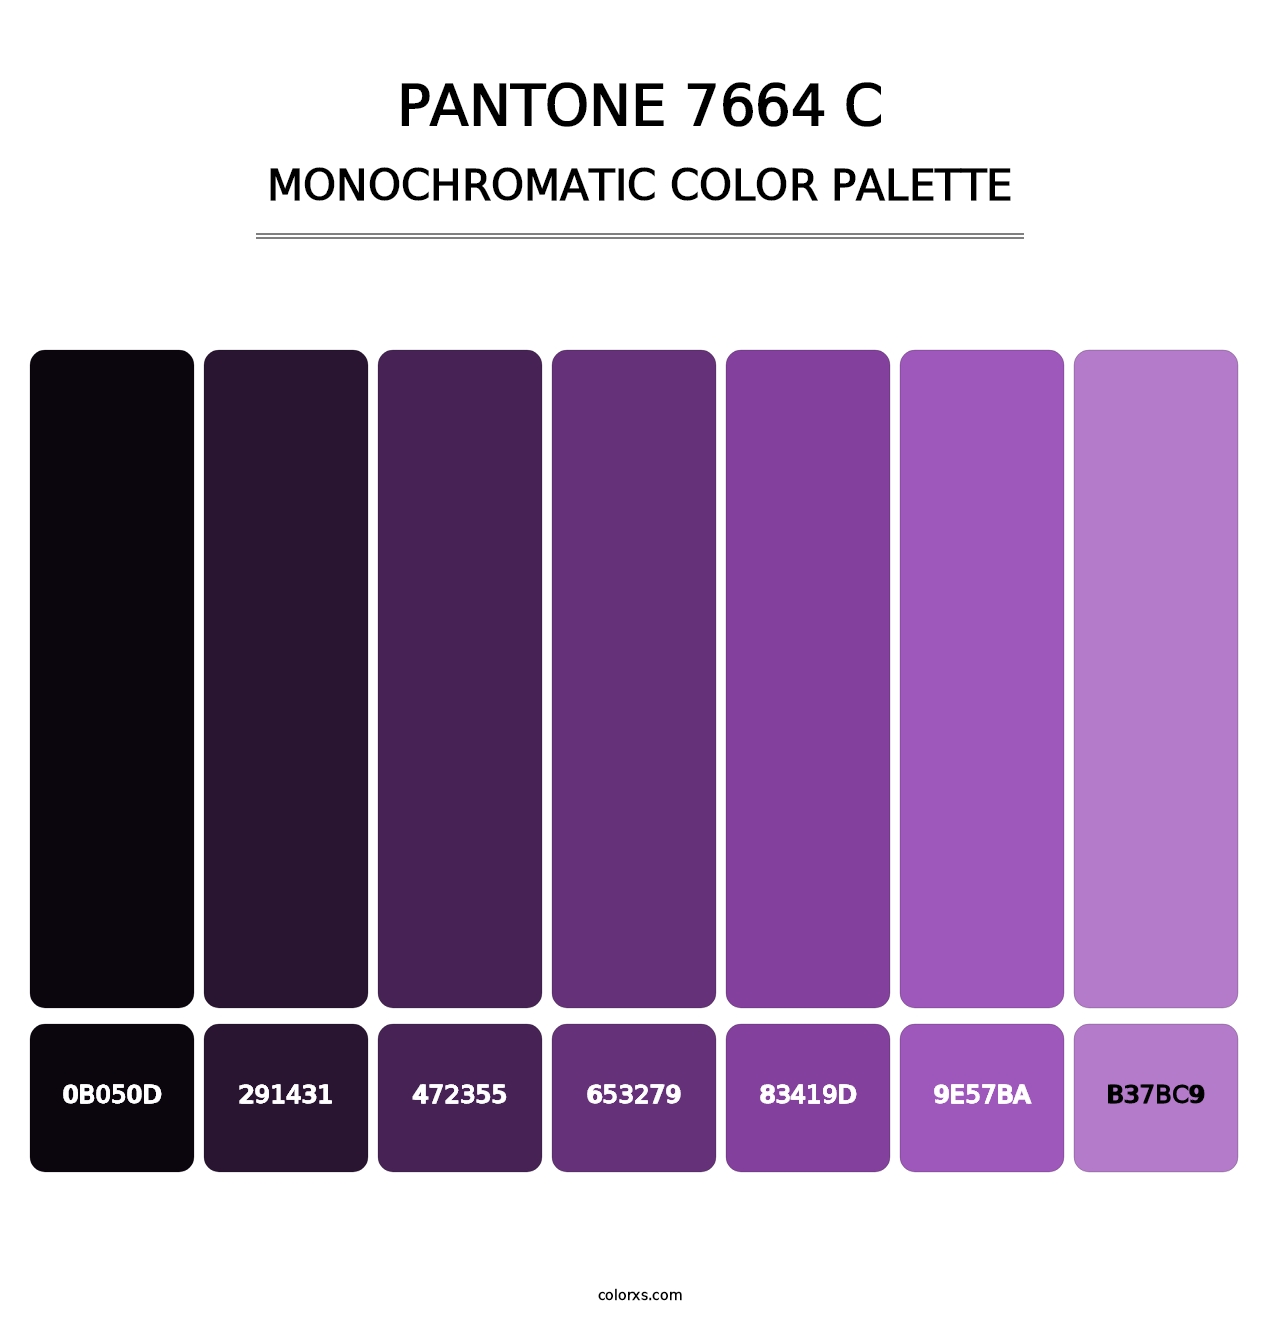 PANTONE 7664 C - Monochromatic Color Palette